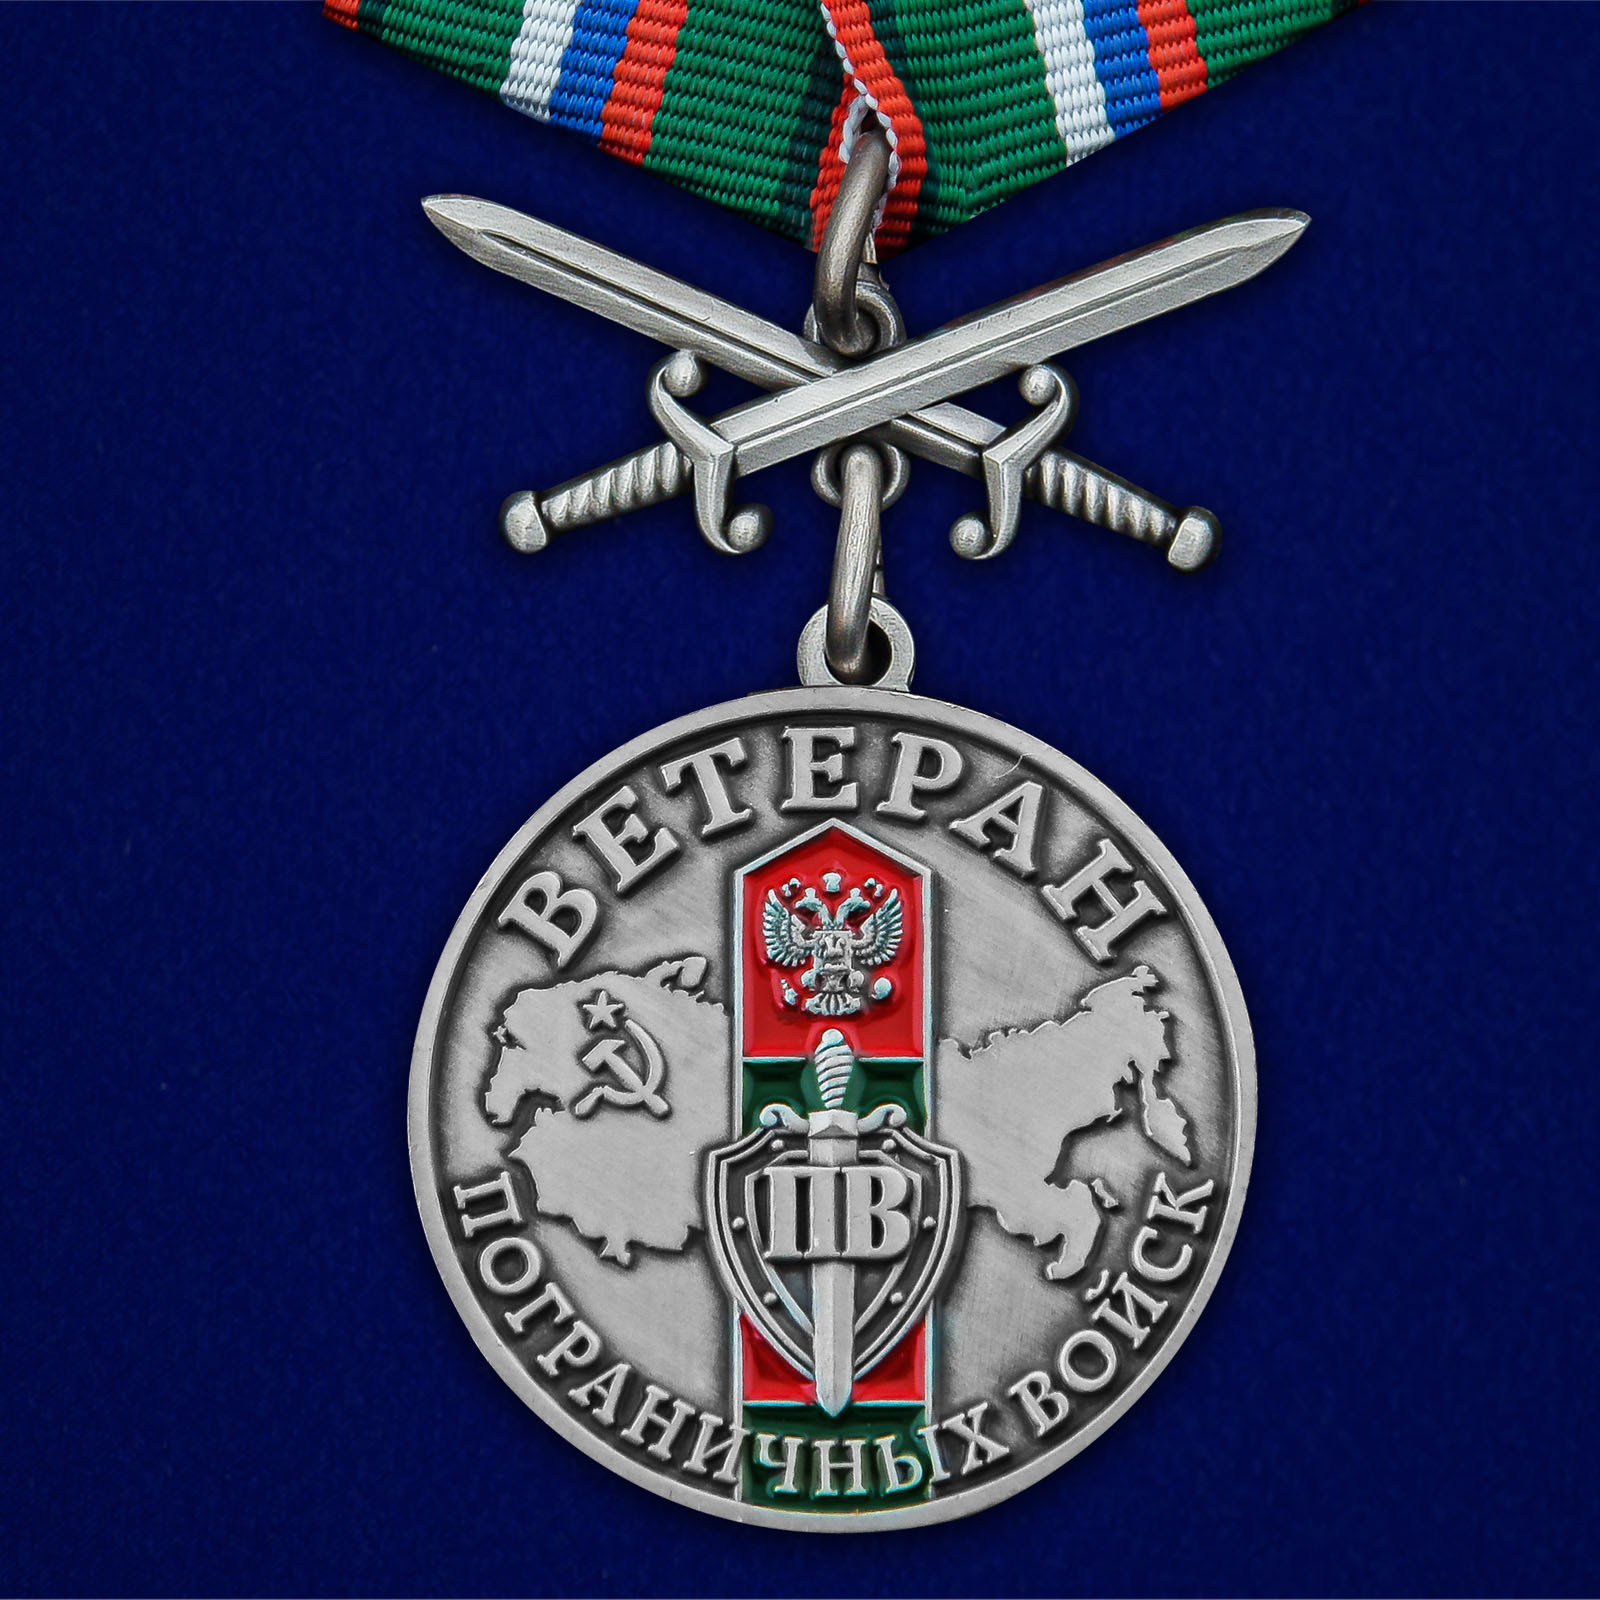 Купить медаль Ветеран Пограничных войск выгодно